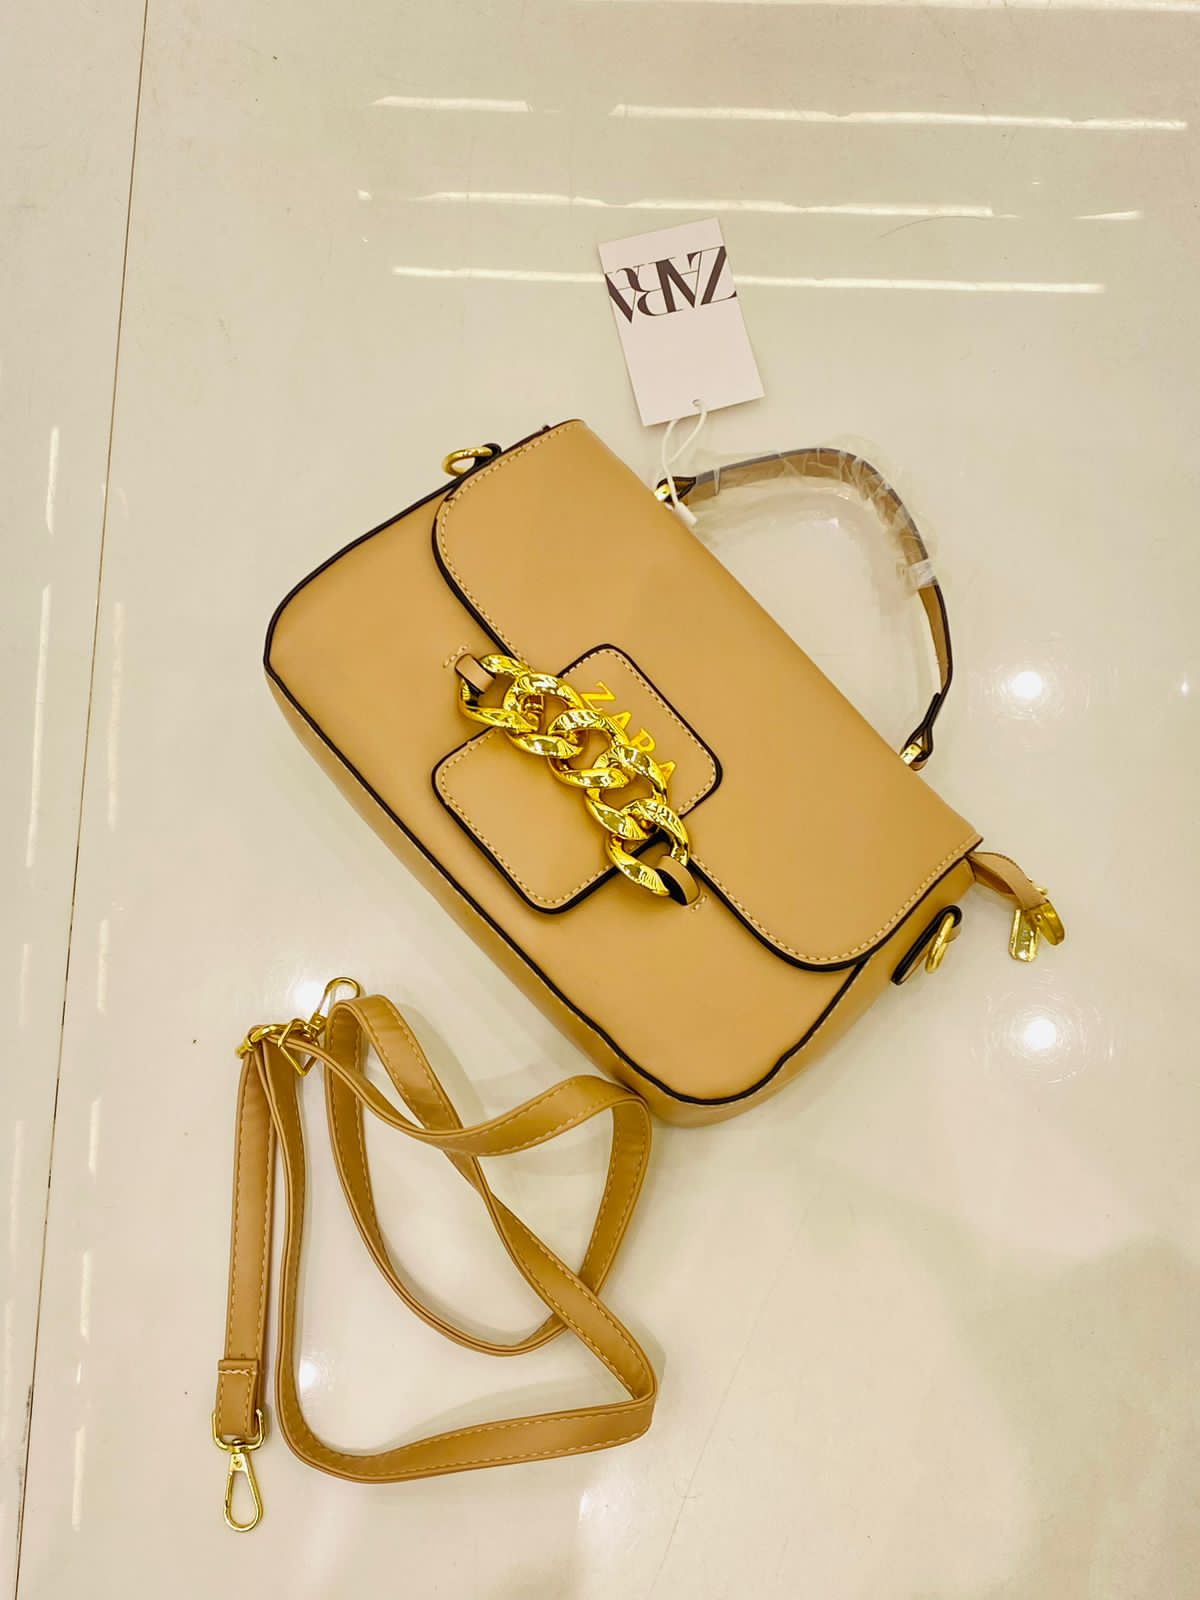 Zara Bags & Handbags for Women for Sale - eBay